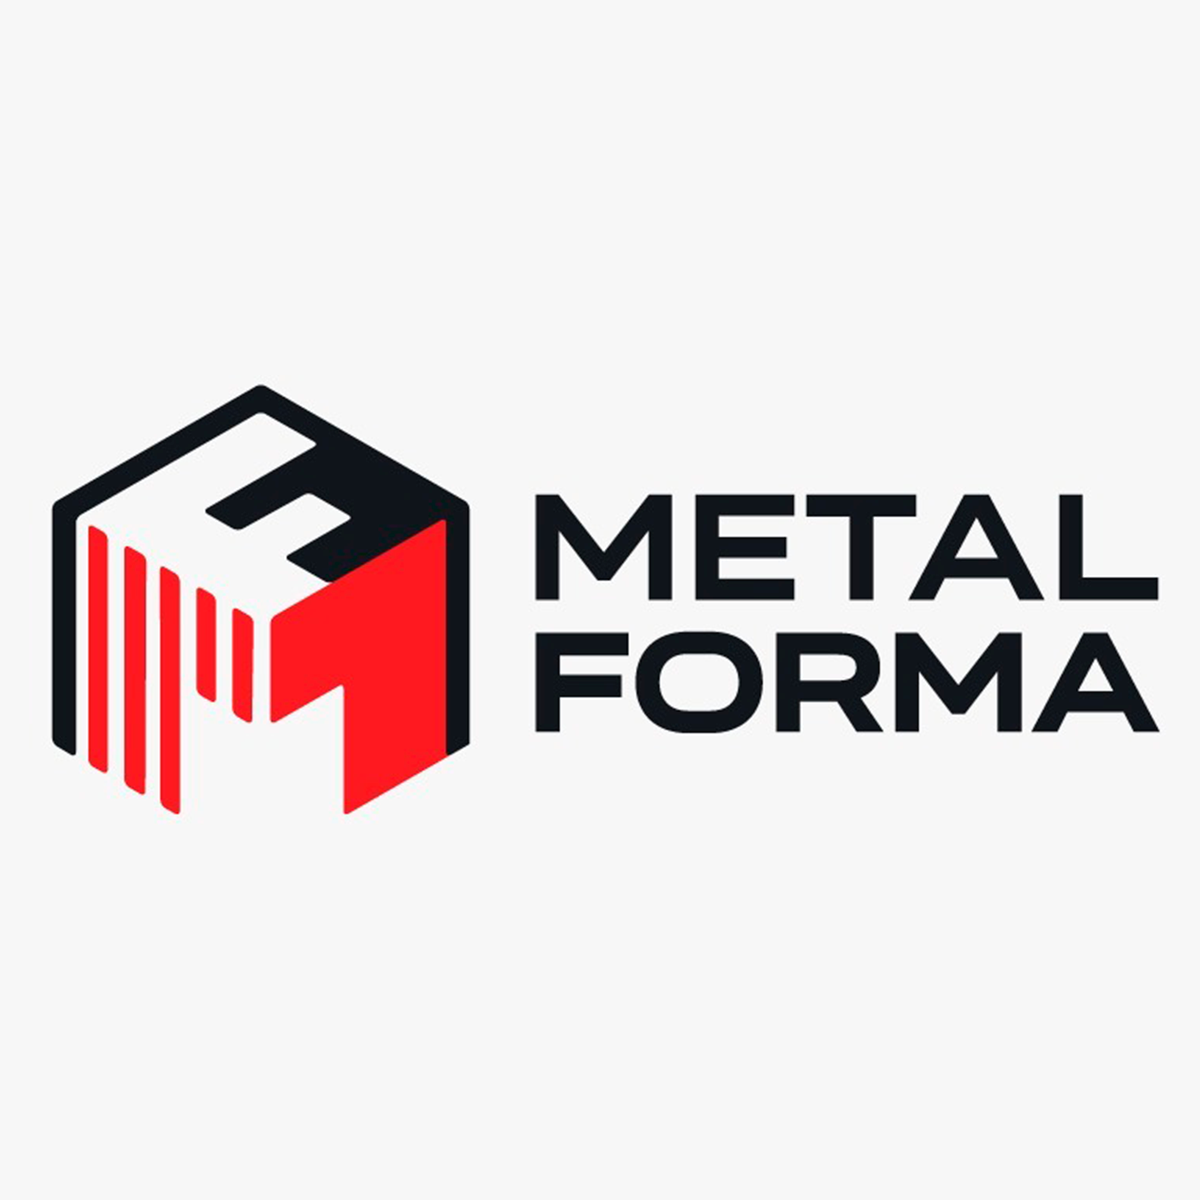 Metalforma Indústria e Comércio Ltda (Macfort)